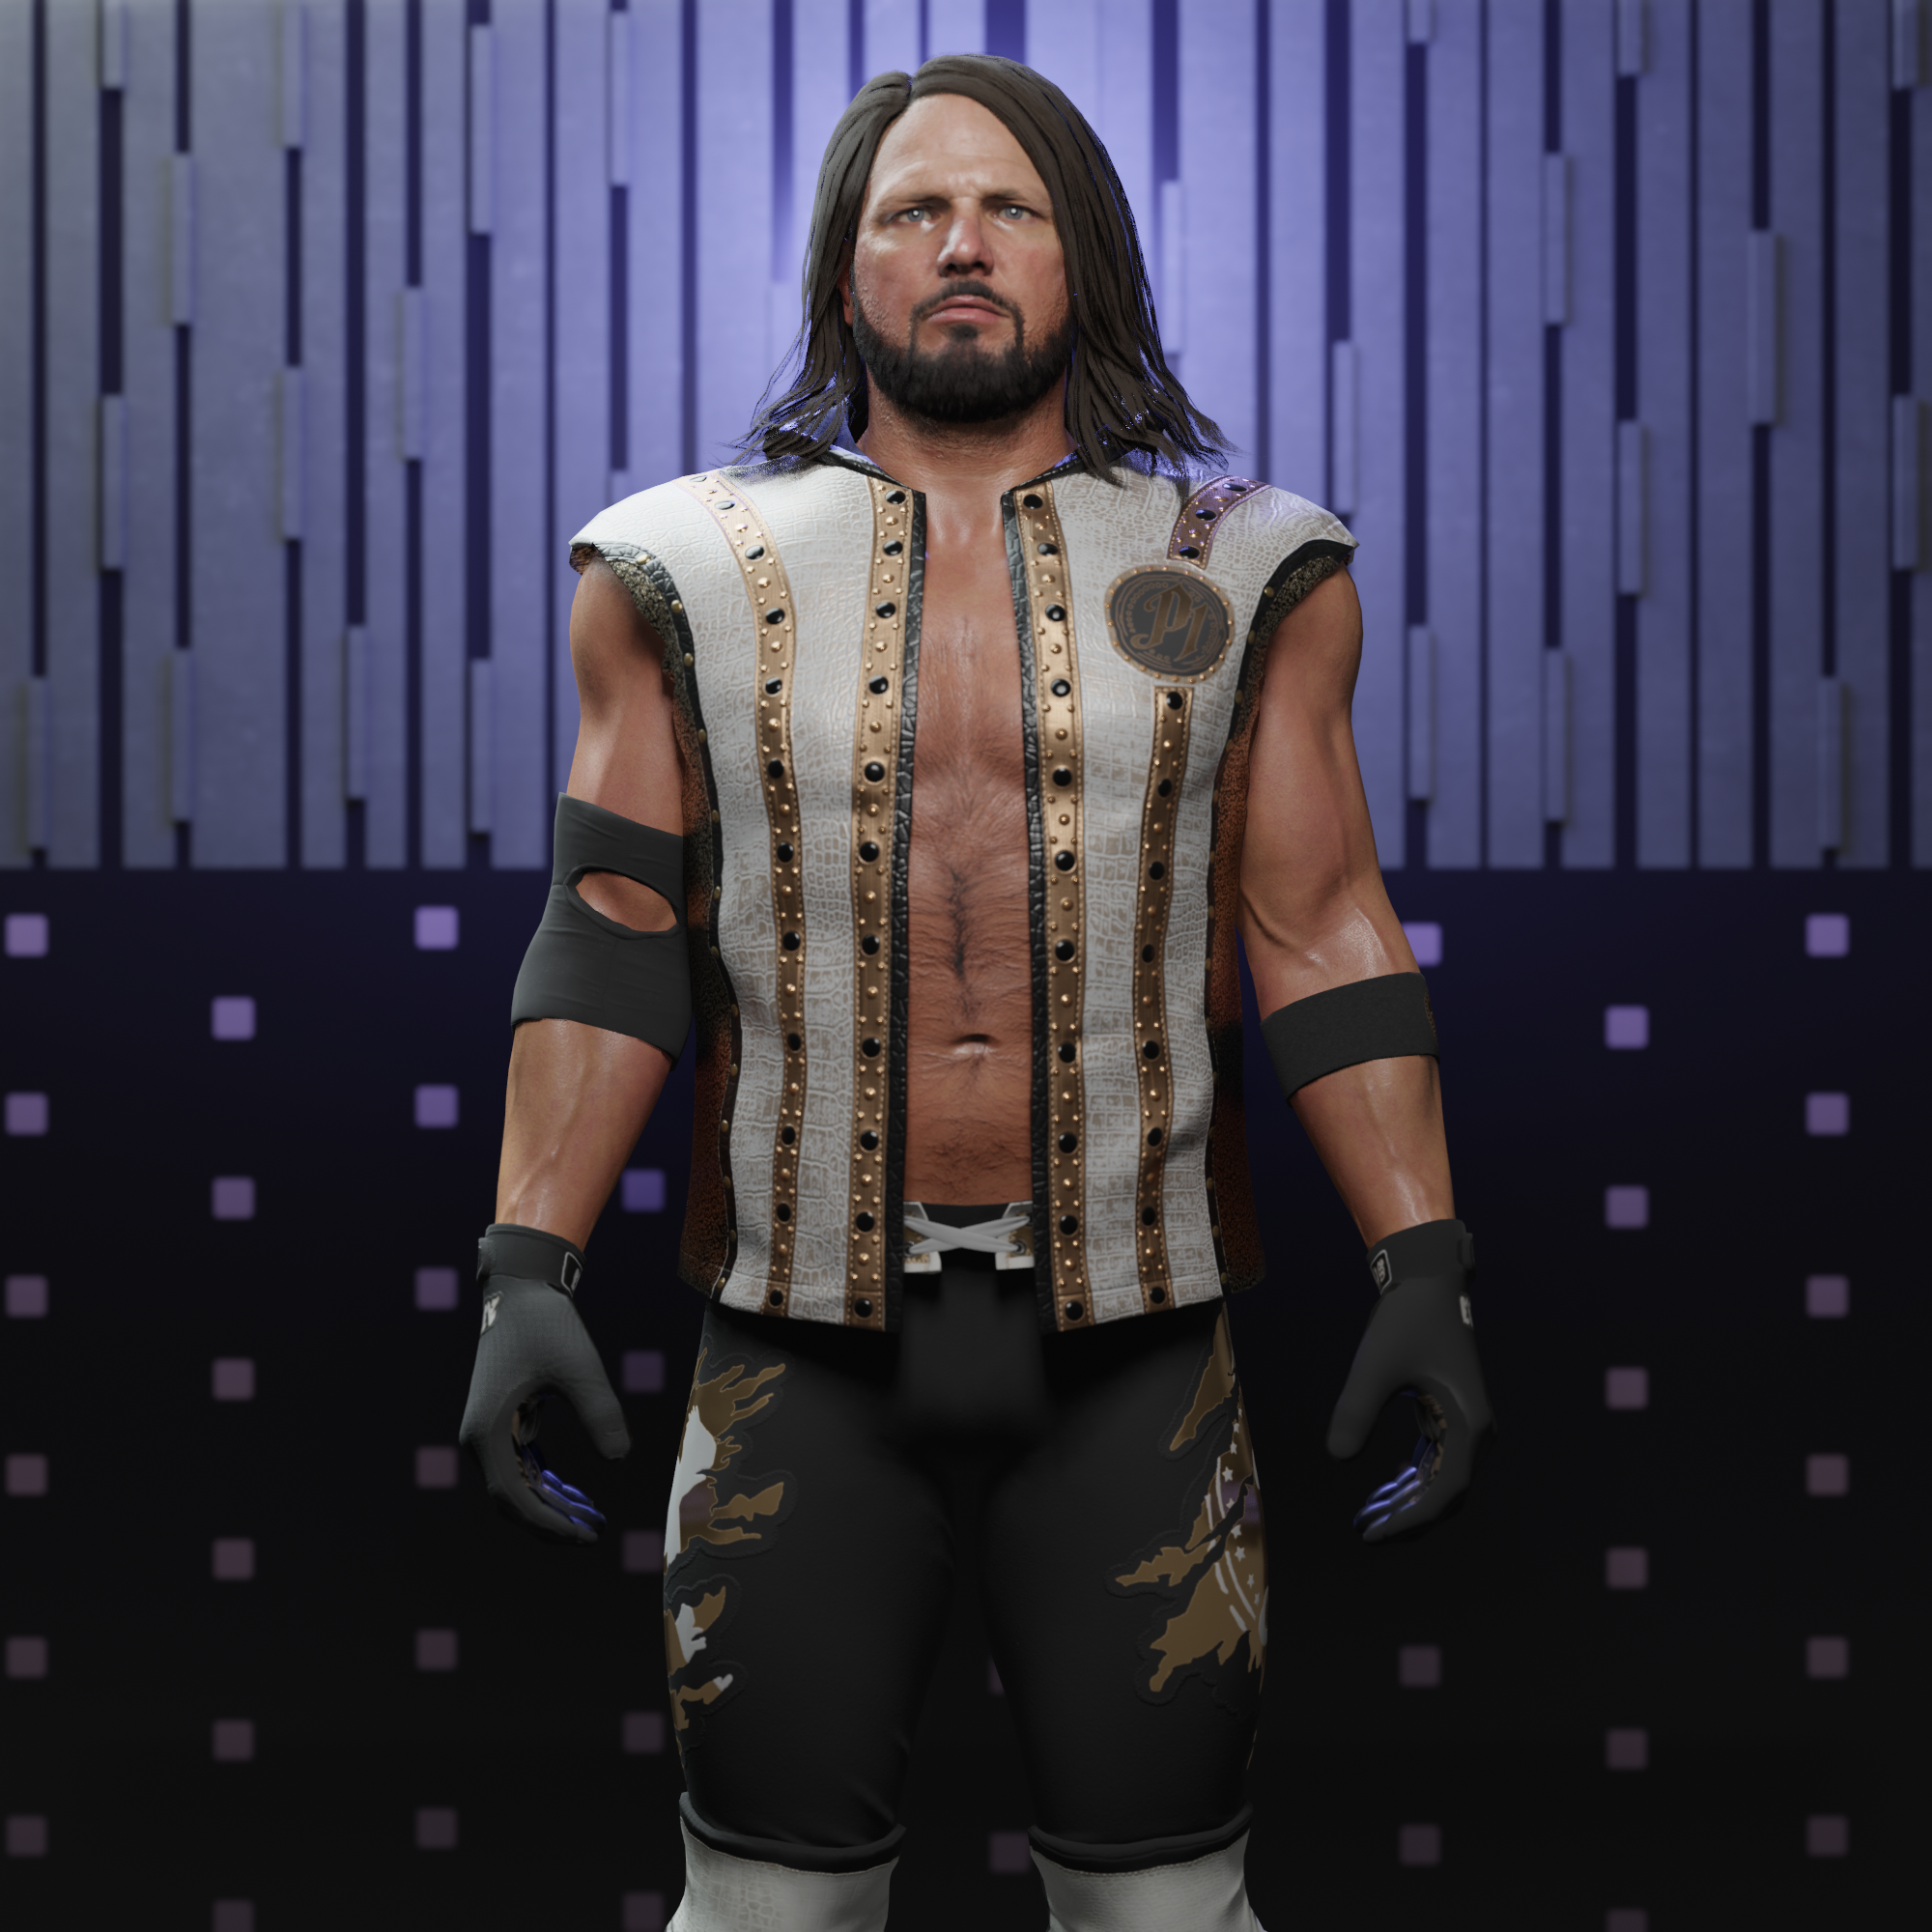 AJ Styles WWE 2K22 Custom Roster Image by MessiahMikeWWE on DeviantArt